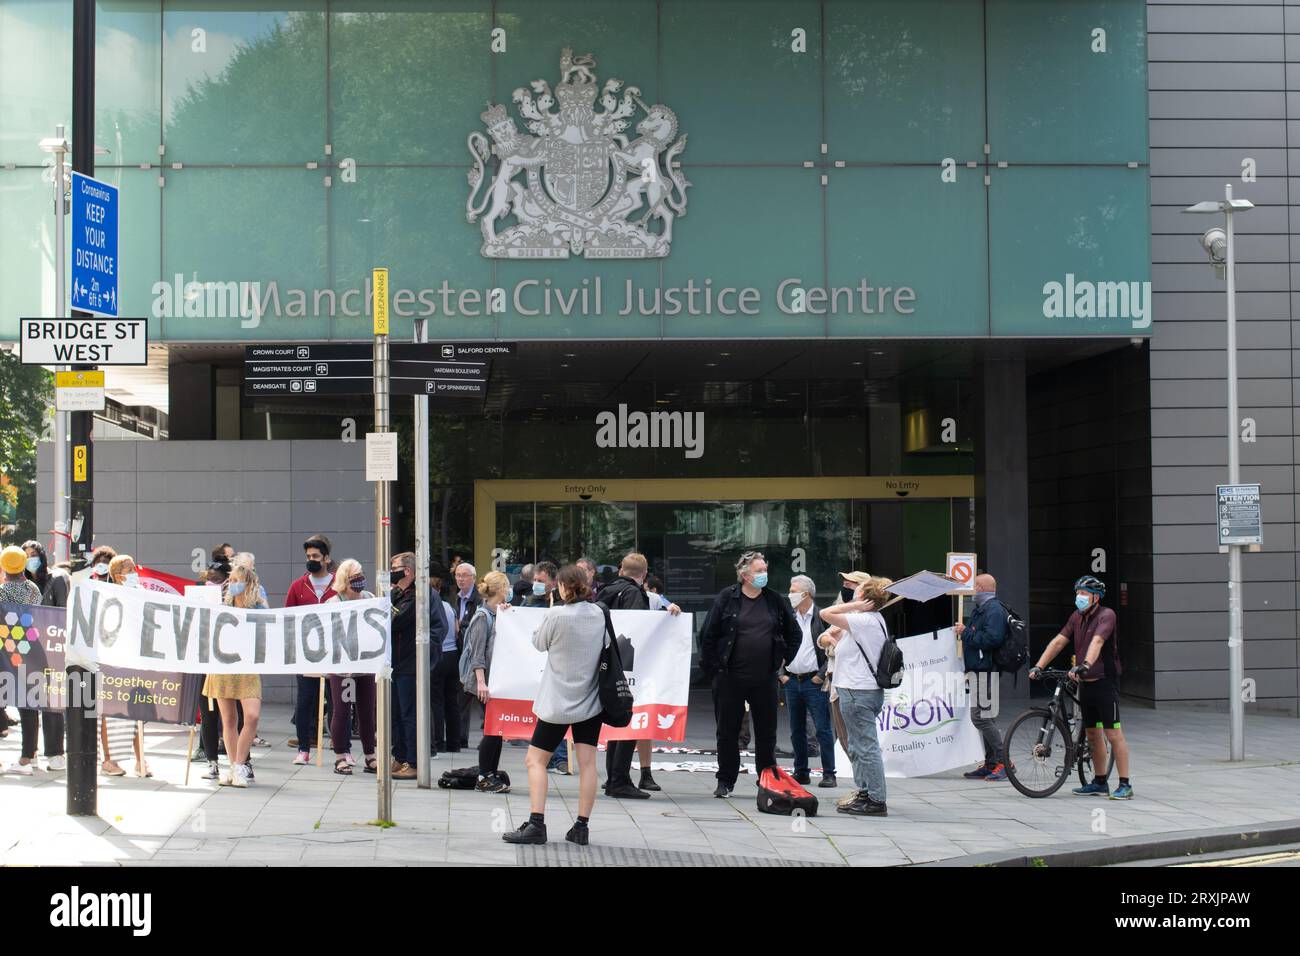 Greater Manchester Against Eviction protesta fuori dal Manchester Civic Justice Centre. Protesta contro la prevista inversione del divieto di sfratto. Foto Stock